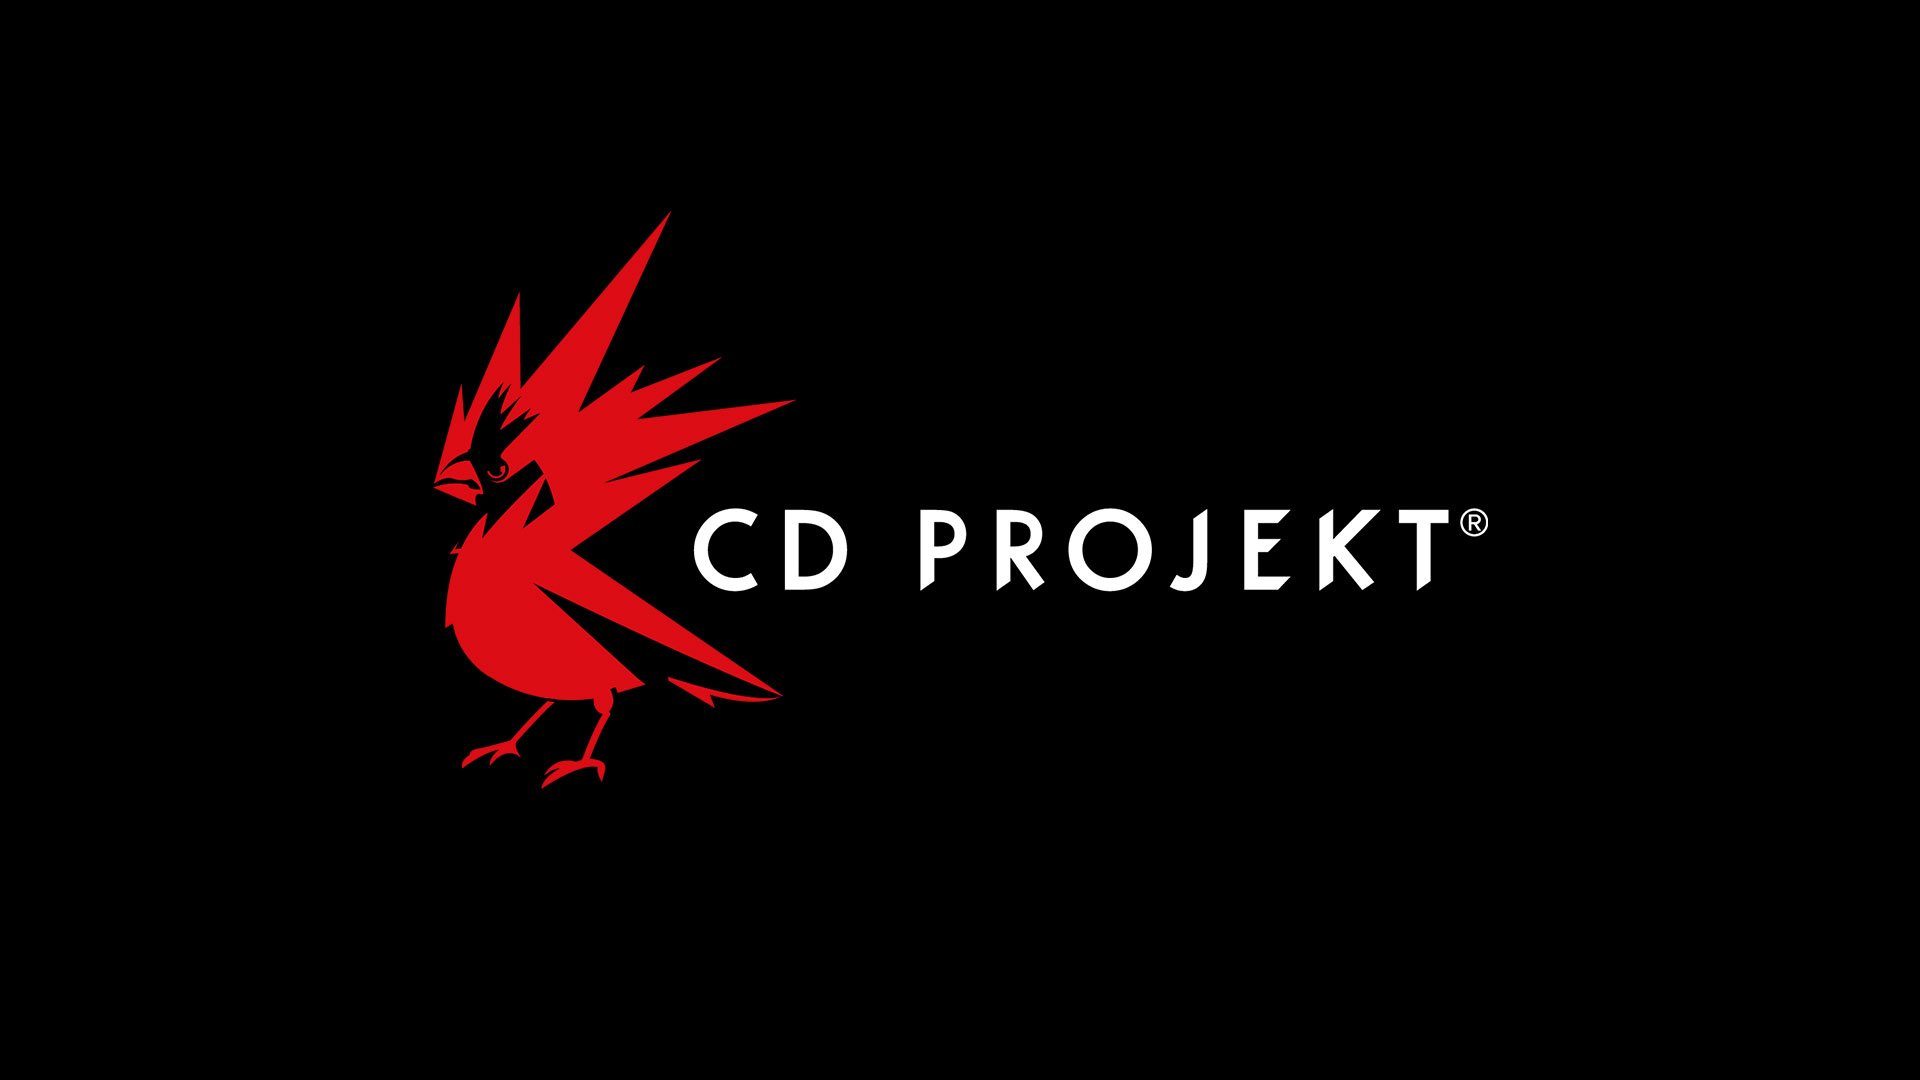 CD Projekt отчиталась о рекордном 3 квартале в истории - этому поспособствовал Cyberpunk 2077